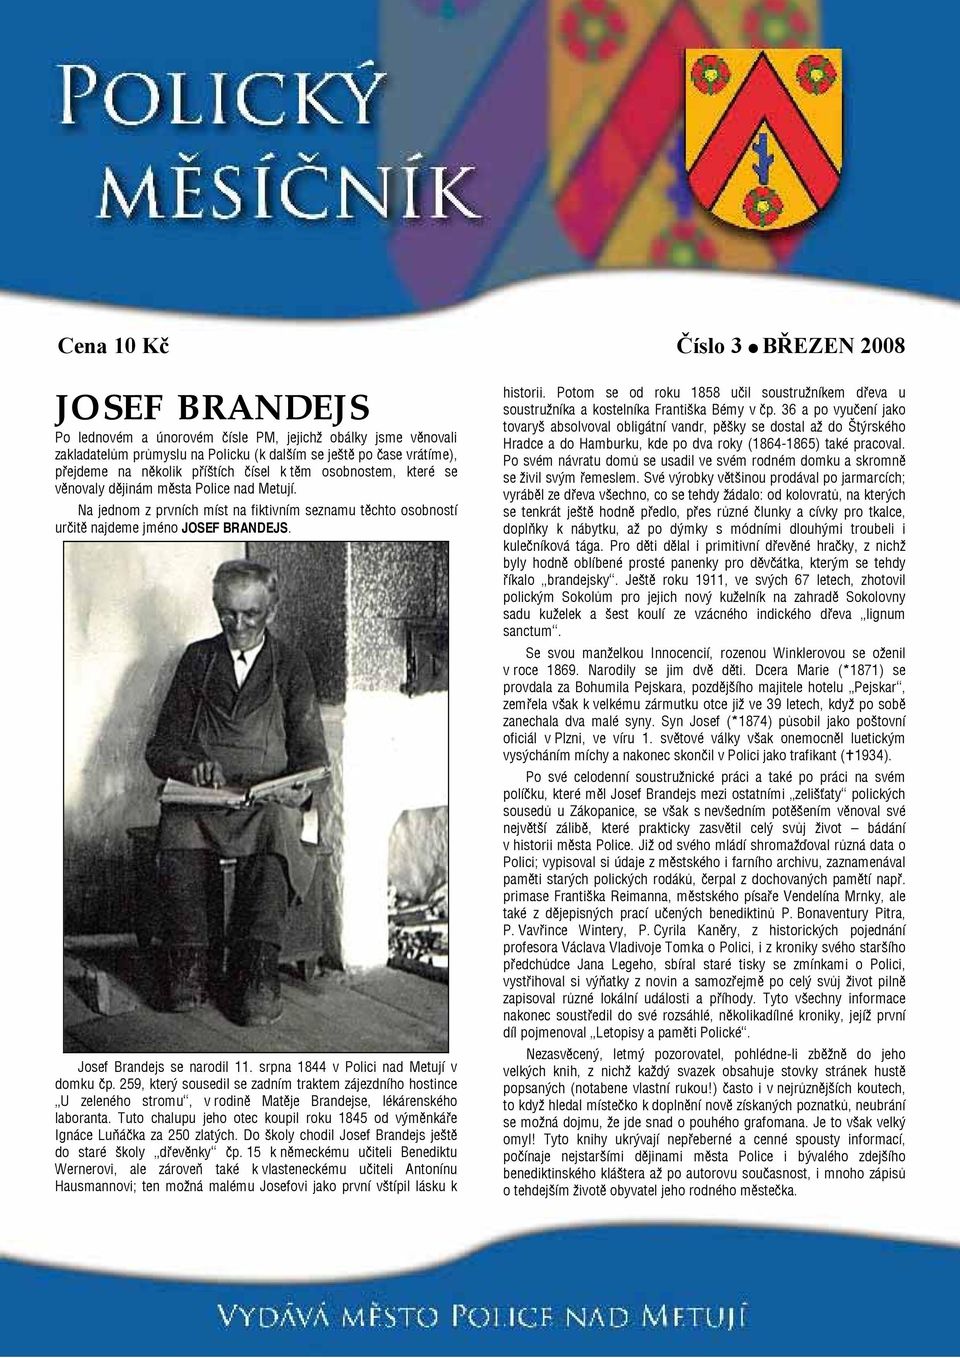 Josef Brandejs se narodil 11. srpna 1844 v Polici nad Metují v domku čp. 259, který sousedil se zadním traktem zájezdního hostince U zeleného stromu, v rodině Matěje Brandejse, lékárenského laboranta.